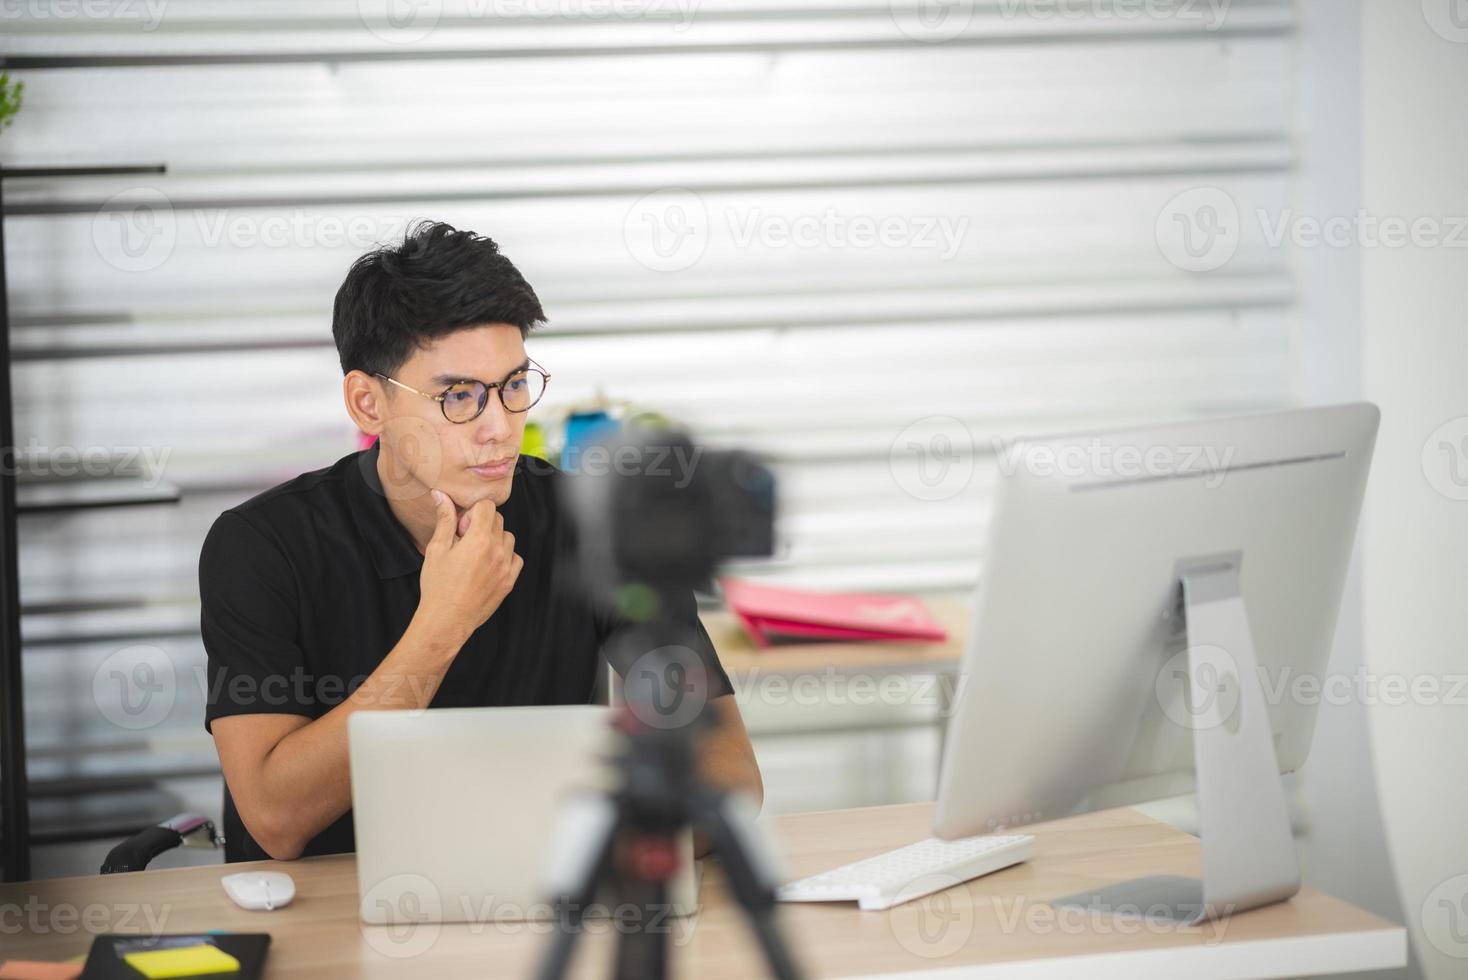 online verkoop en social media marketingconcept, jonge Aziatische man die met camera werkt om live te streamen om een product te verkopen en pakket te tonen om te beoordelen, cyberspace en blogwinkel uit te zenden foto